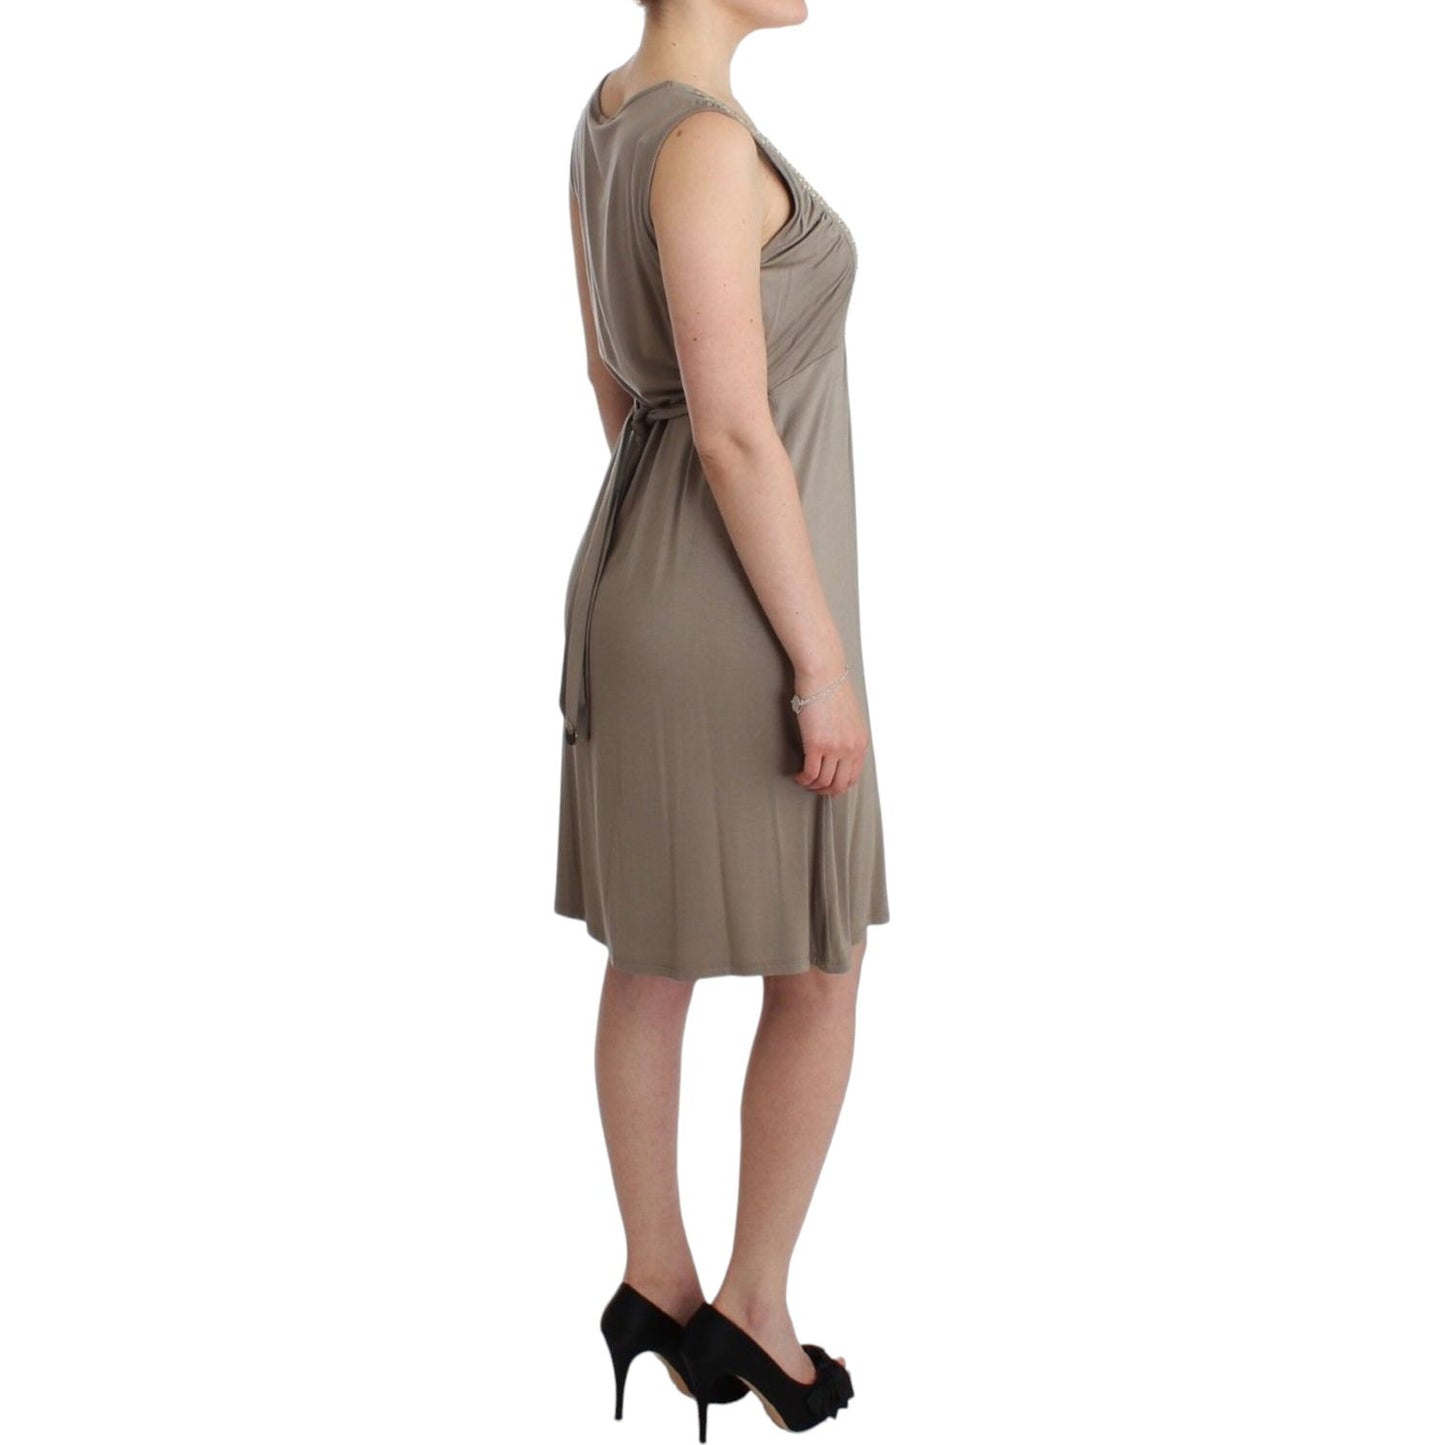 Roccobarocco Studded Sheath Knee-Length Dress in Beige khaki-studded-sheath-dress 2800-khaki-studded-sheath-dress-3-scaled-63c0e336-0b2.jpg